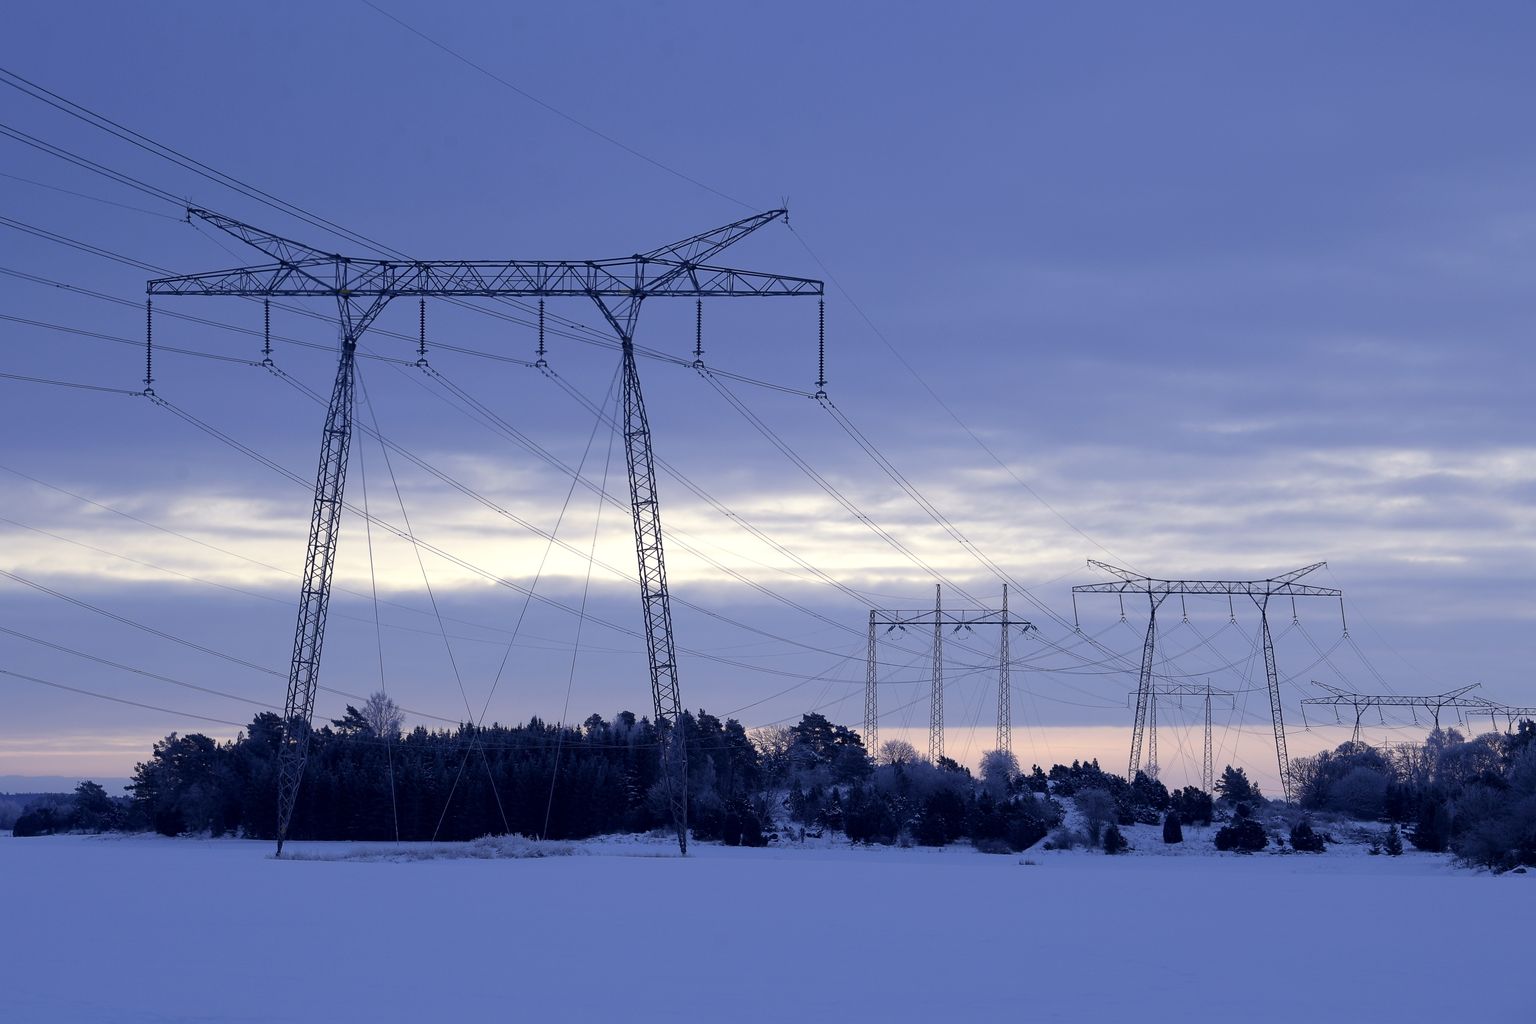 Rootsi eksportis esimesel poolaastal kõvasti elektrit